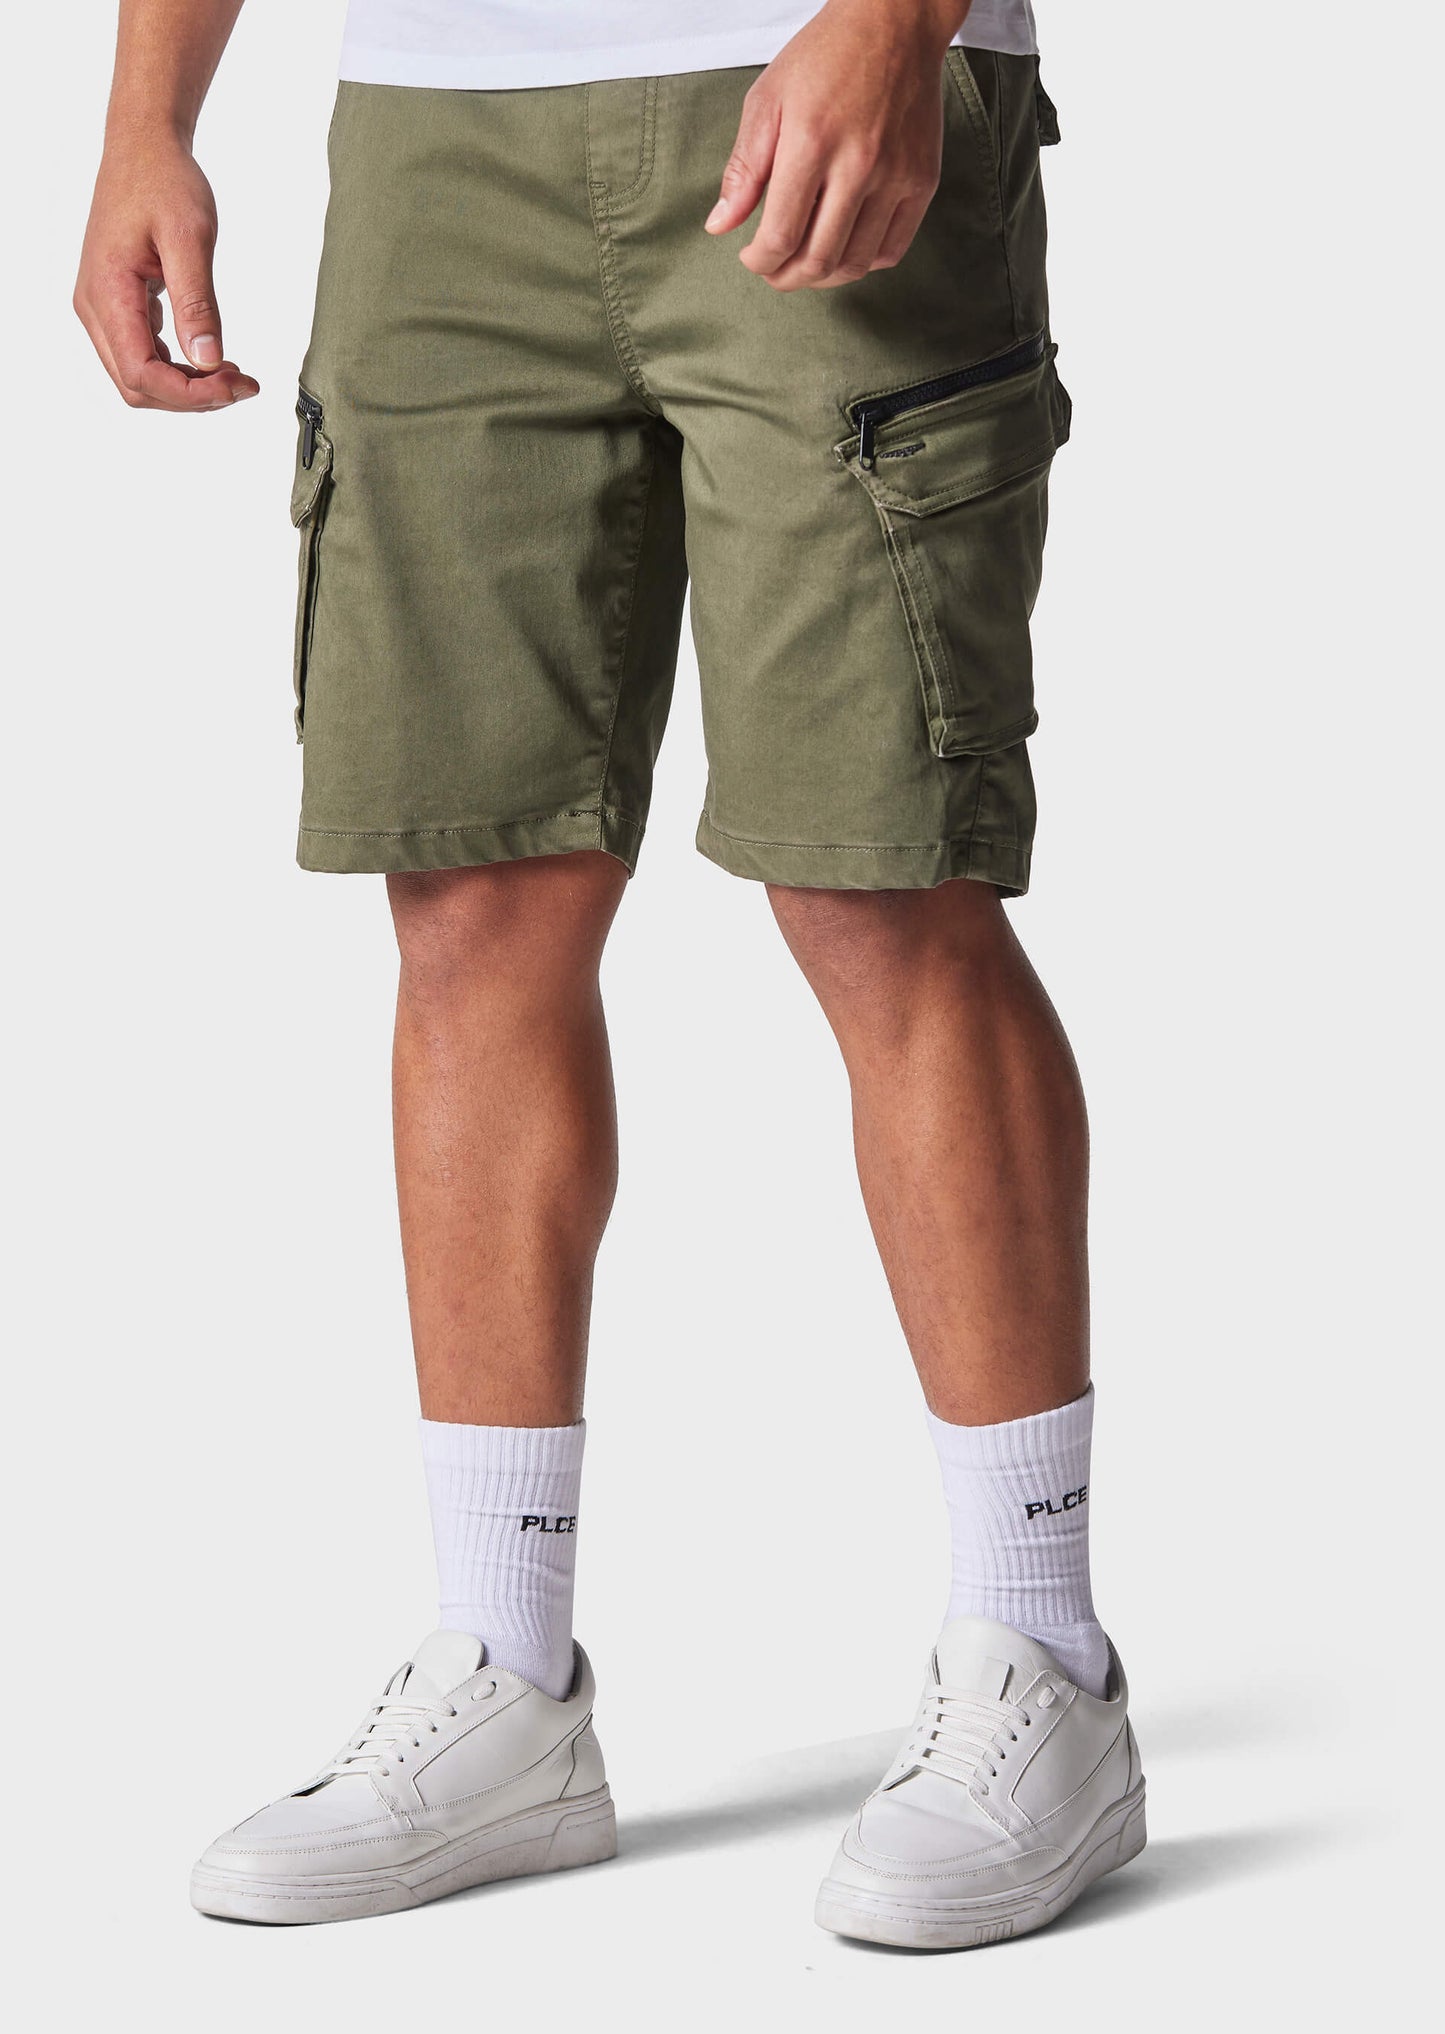 Doust Khaki Chino Shorts